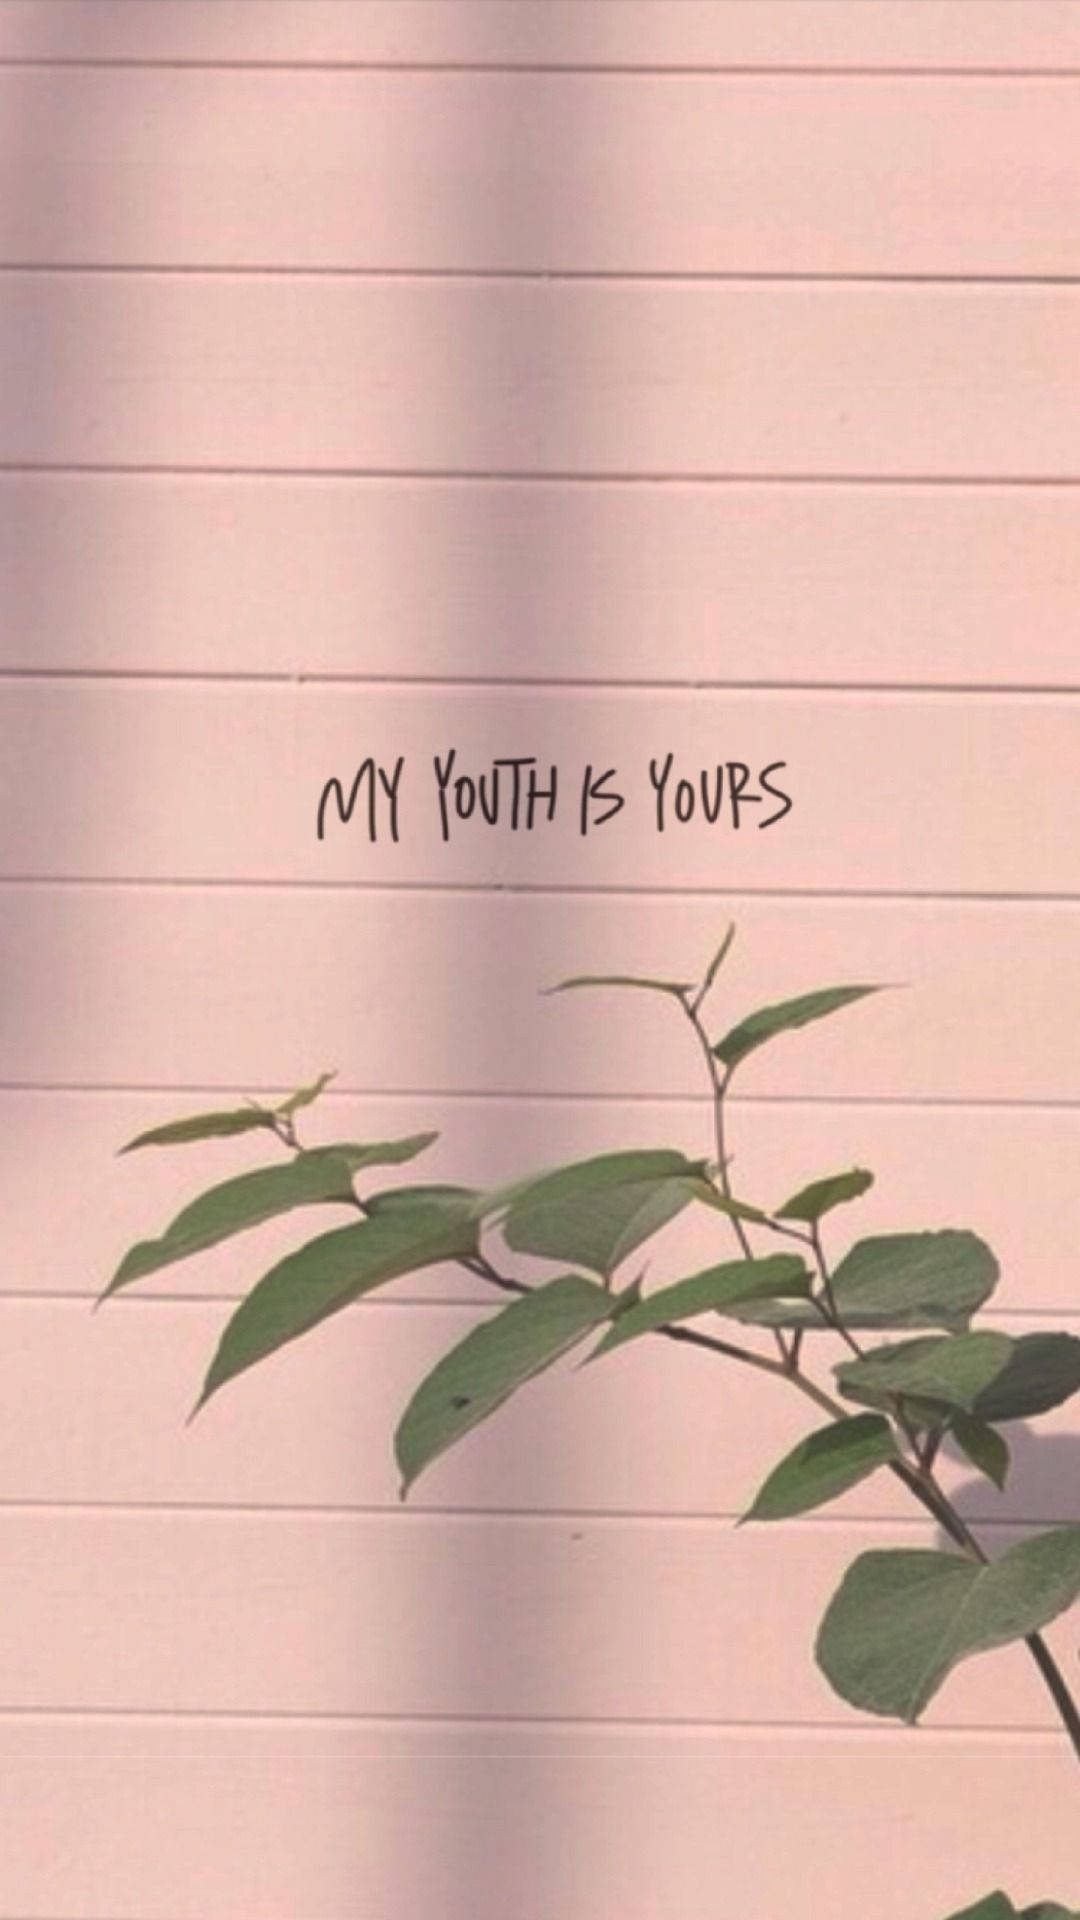 Youth Lyrics On Wall Tumblr Aesthetic Background